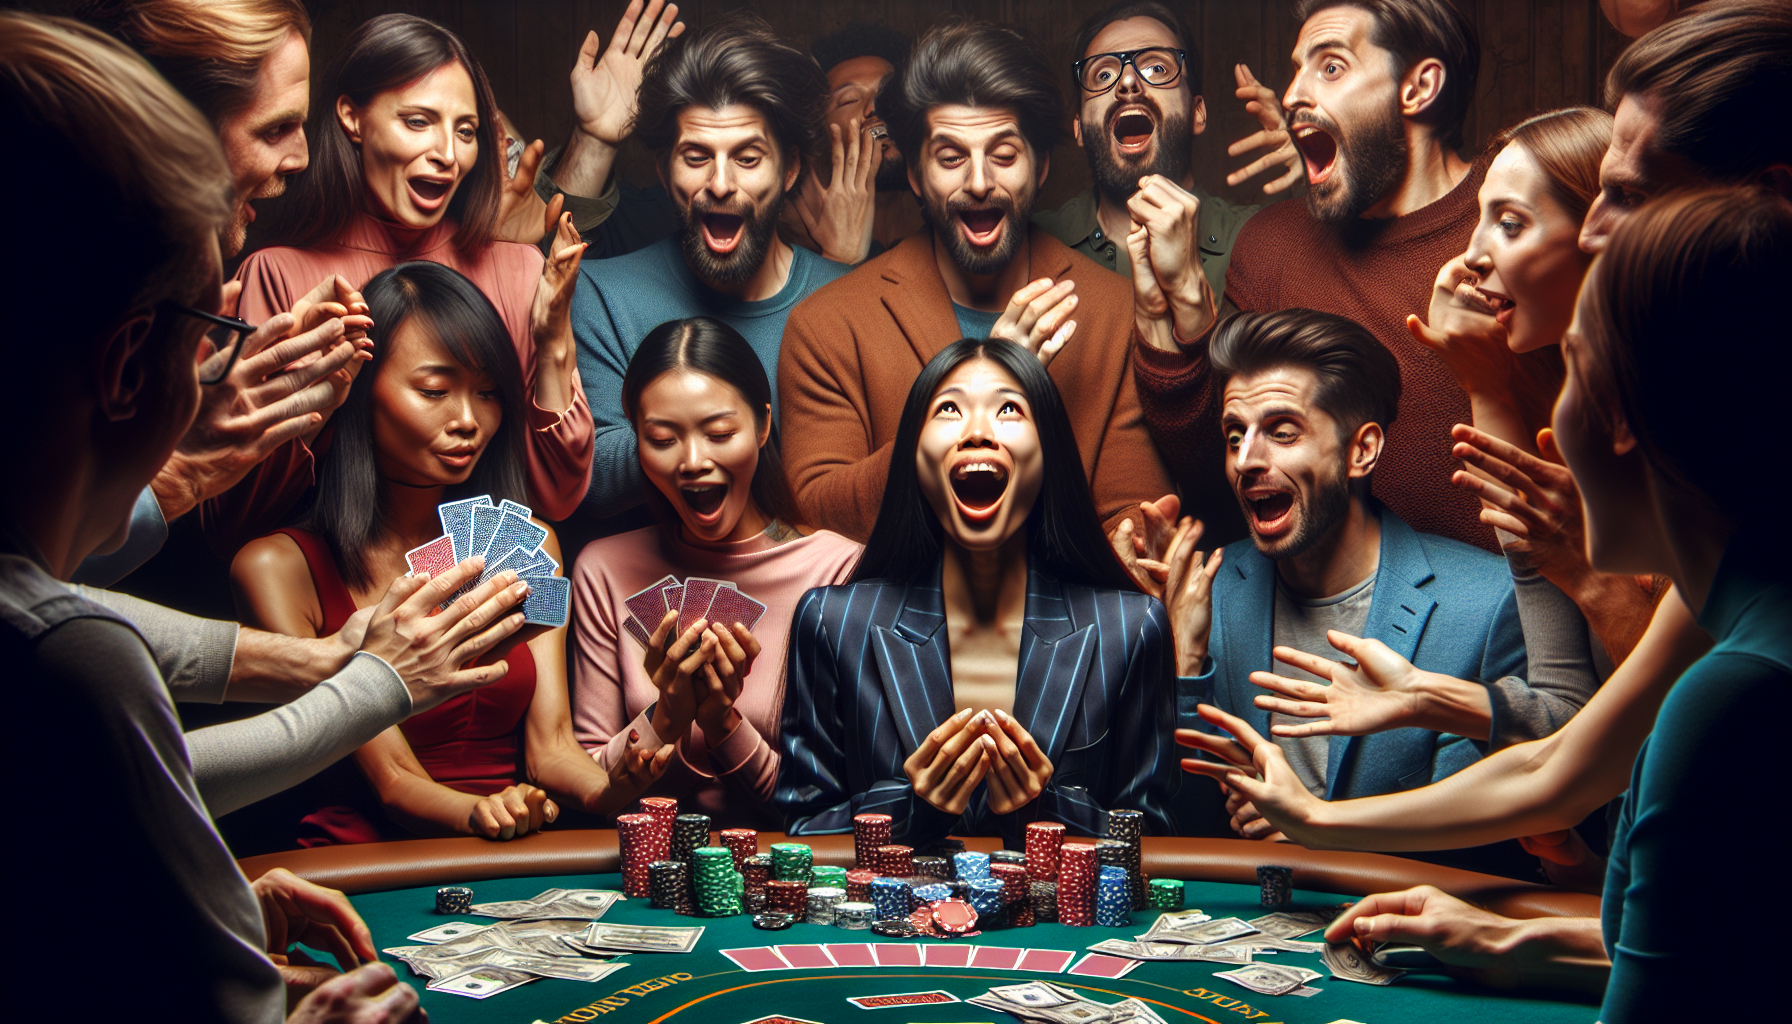 découvrez comment gagner de l'argent en jouant au poker. apprenez les stratégies gagnantes et maximisez vos gains sur les tables de poker en ligne ou en live.